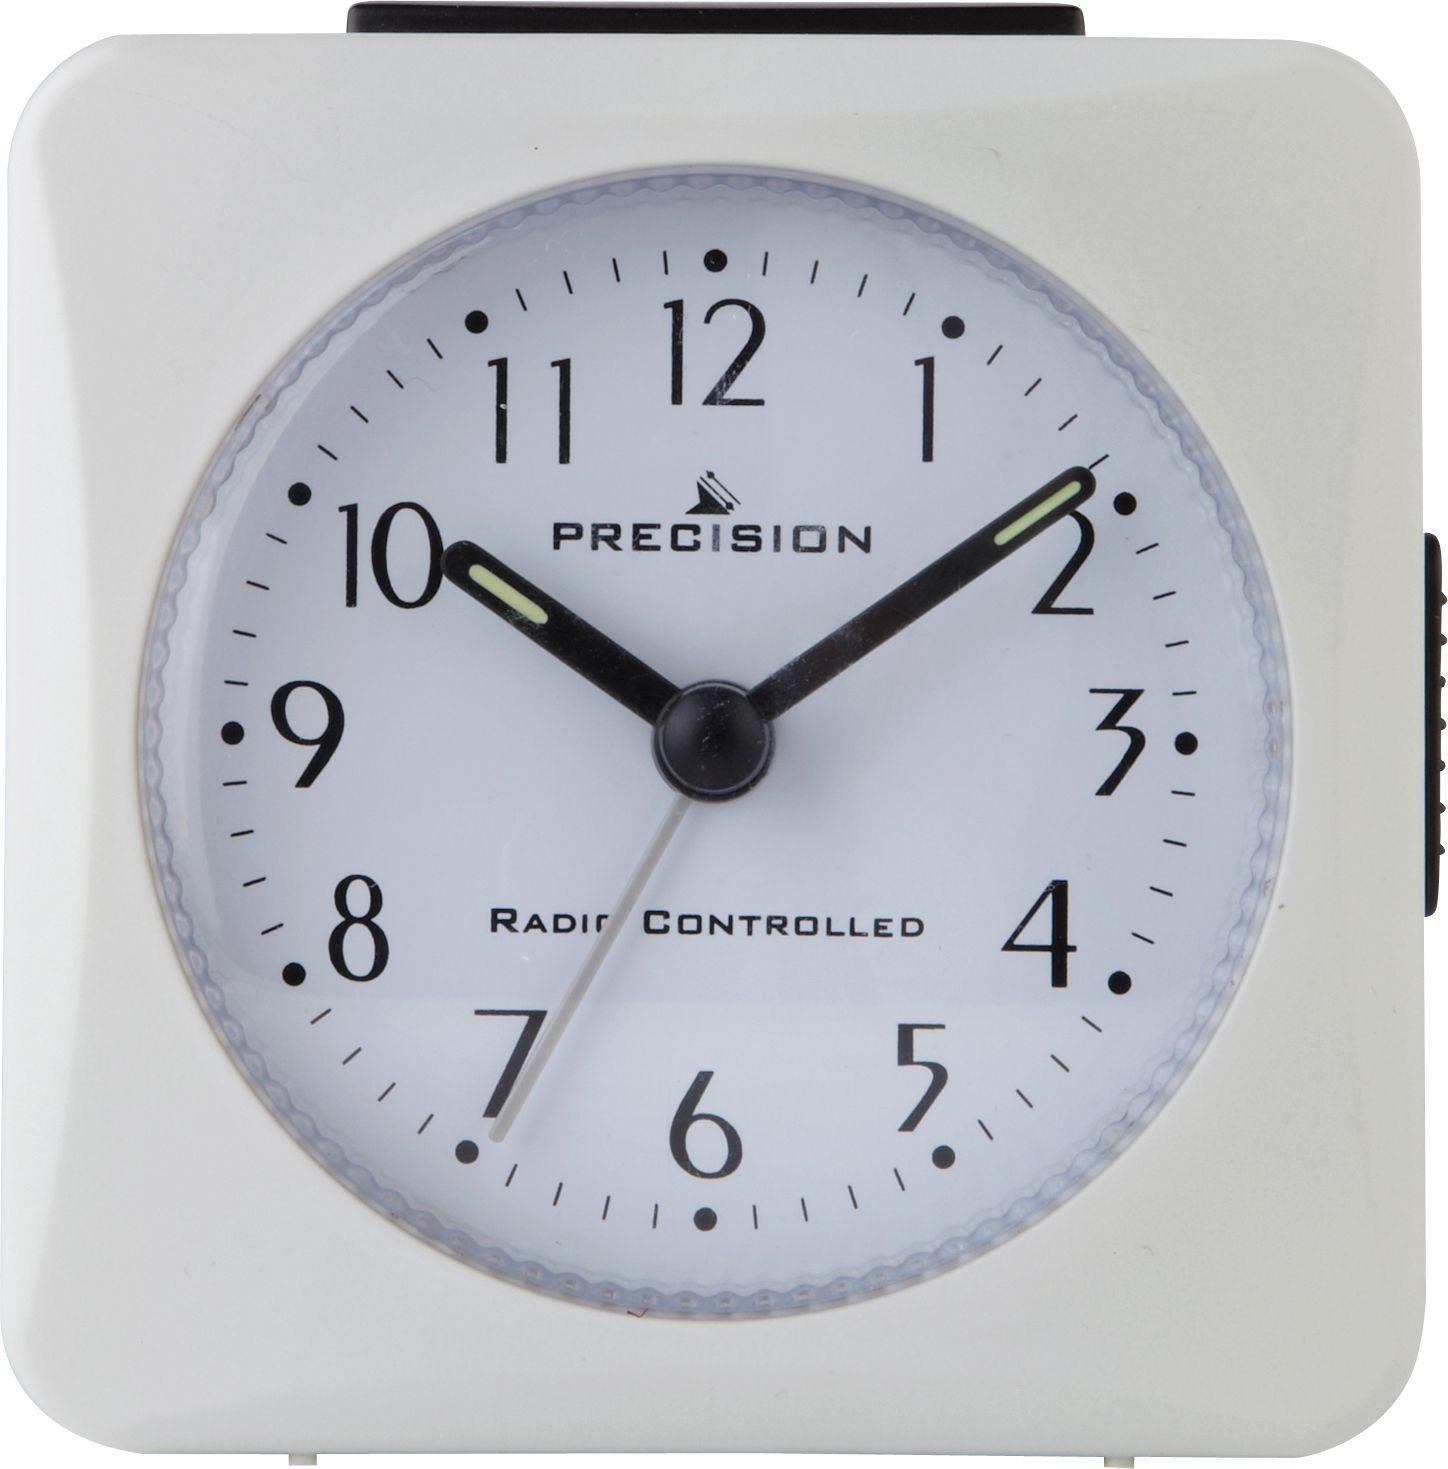 'Precision Radio Controlled Alarm Clock